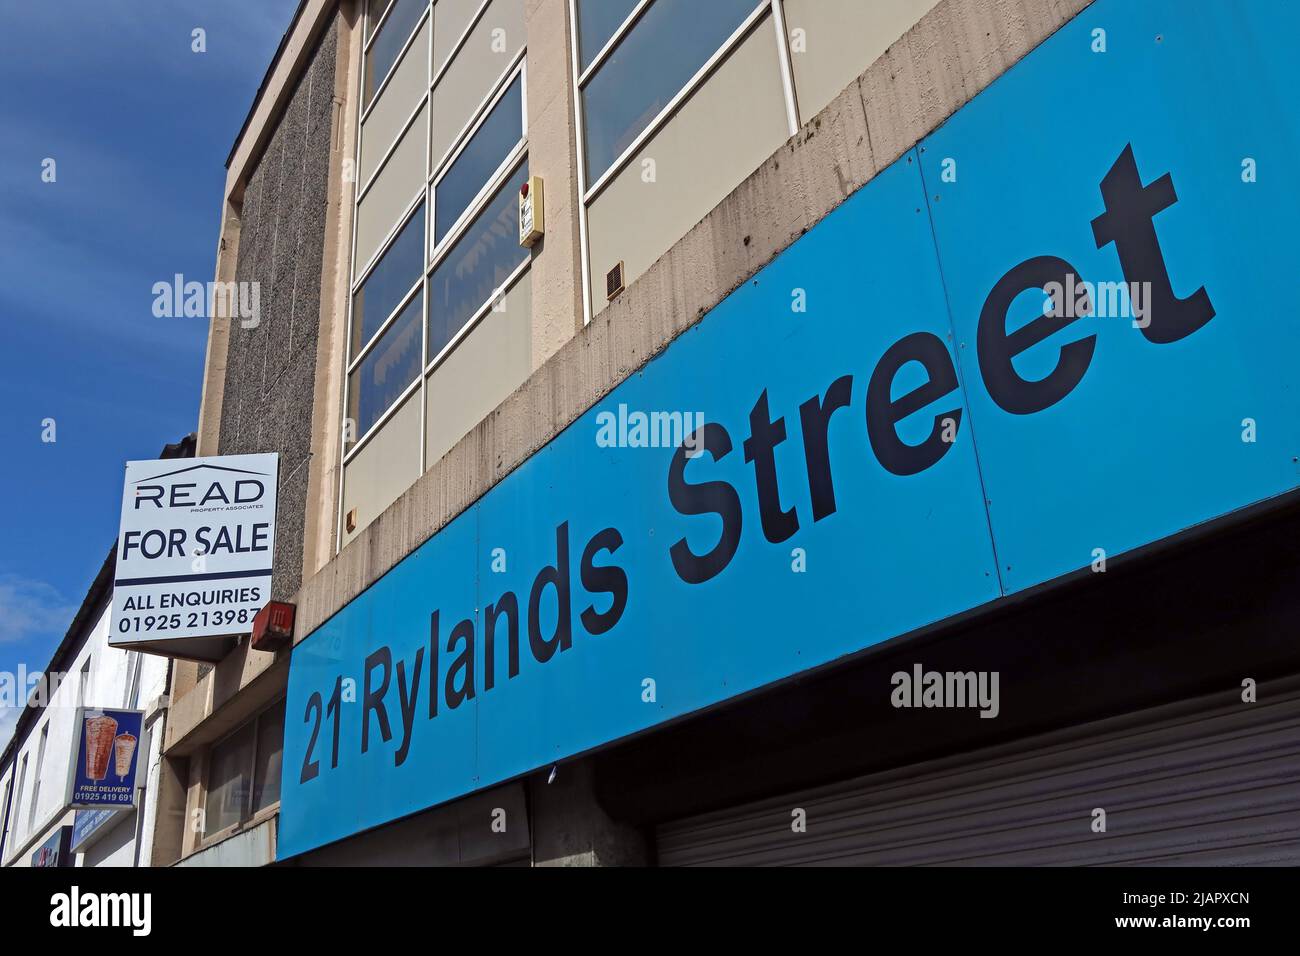 Centre-ville ex-bureaux du conseil au 21 Rylands Street, Warrington, Cheshire,UK, WA1 1EJ - Lire pour la vente Banque D'Images